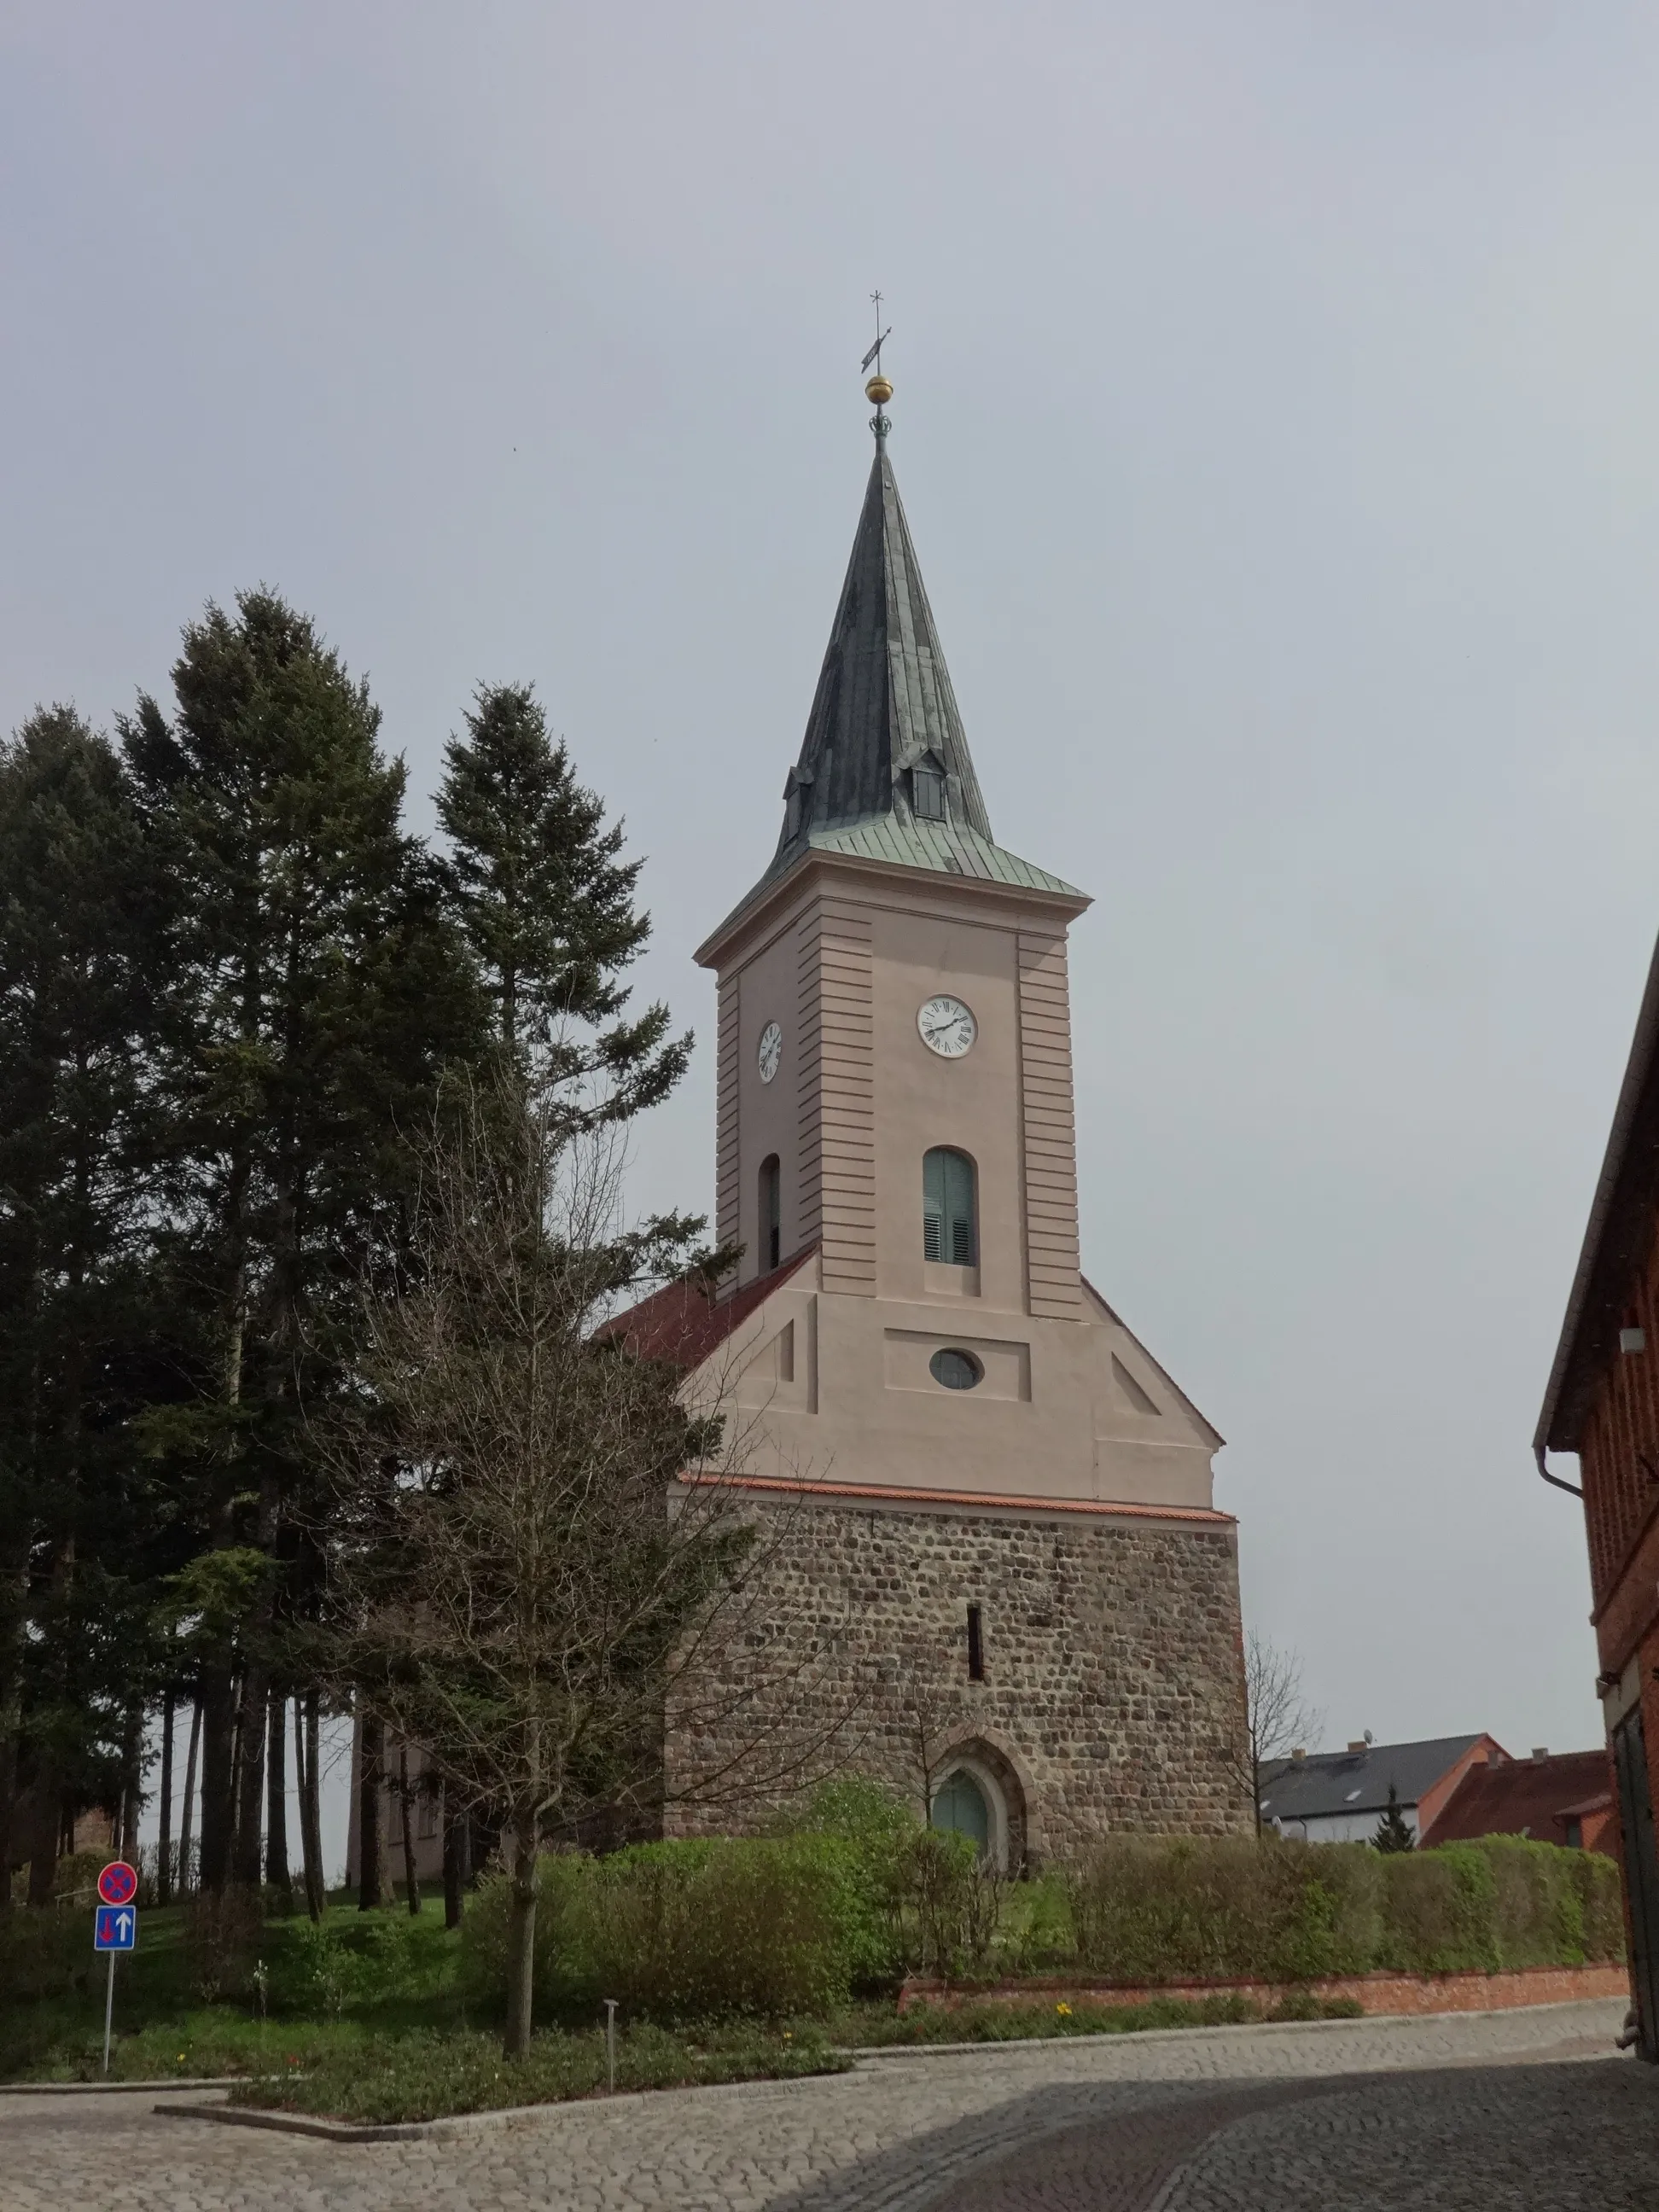 Photo showing: Die evangelische Stadtkirche Biesenthal ist ein Sakralbau aus dem 13. Jahrhundert in Biesenthal im Landkreis Barnim (Brandenburg). Nach einem schweren Brand im 18. Jahrhundert, bei dem nur der Turm erhalten blieb, baute die Gemeinde das Bauwerk in den Jahren 1762 bis 1766 wieder auf. Im Innenraum befinden sich eine Dinse-Orgel aus dem Jahr 1859 sowie ein spätbarocker Kanzelaltar.